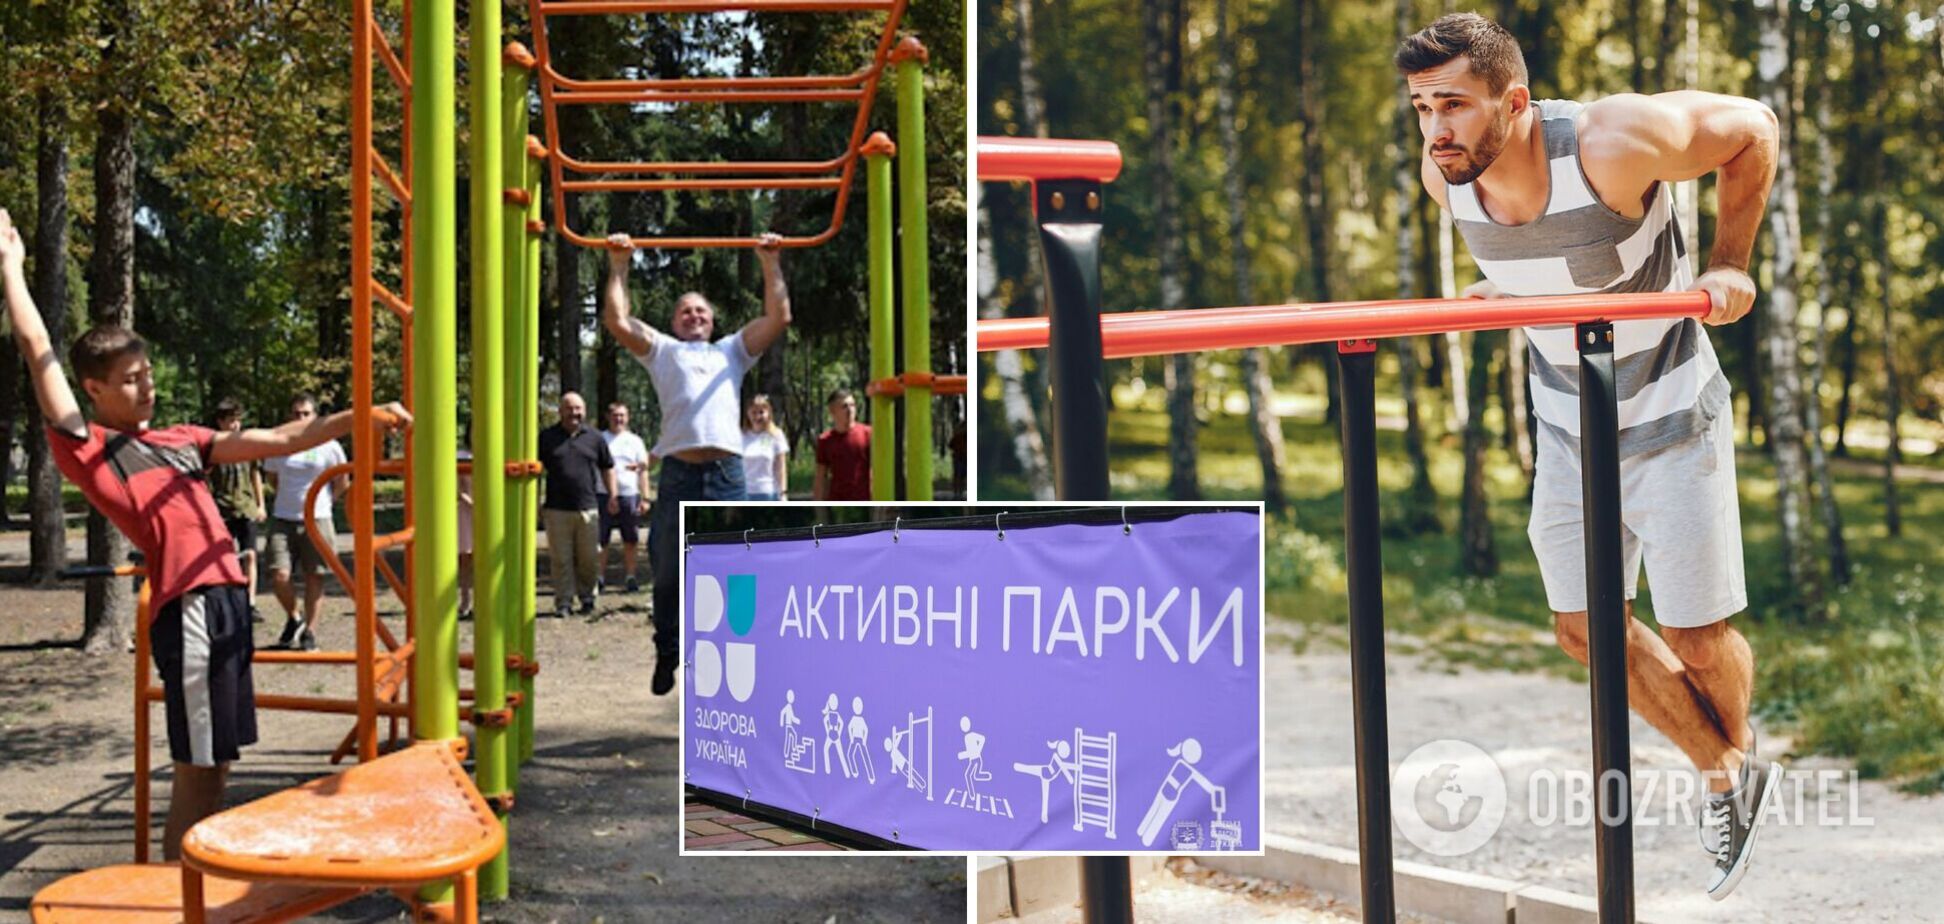 Як держава залучає українців до спорту? Результати національної реклами 'Активні парки' на YouTube